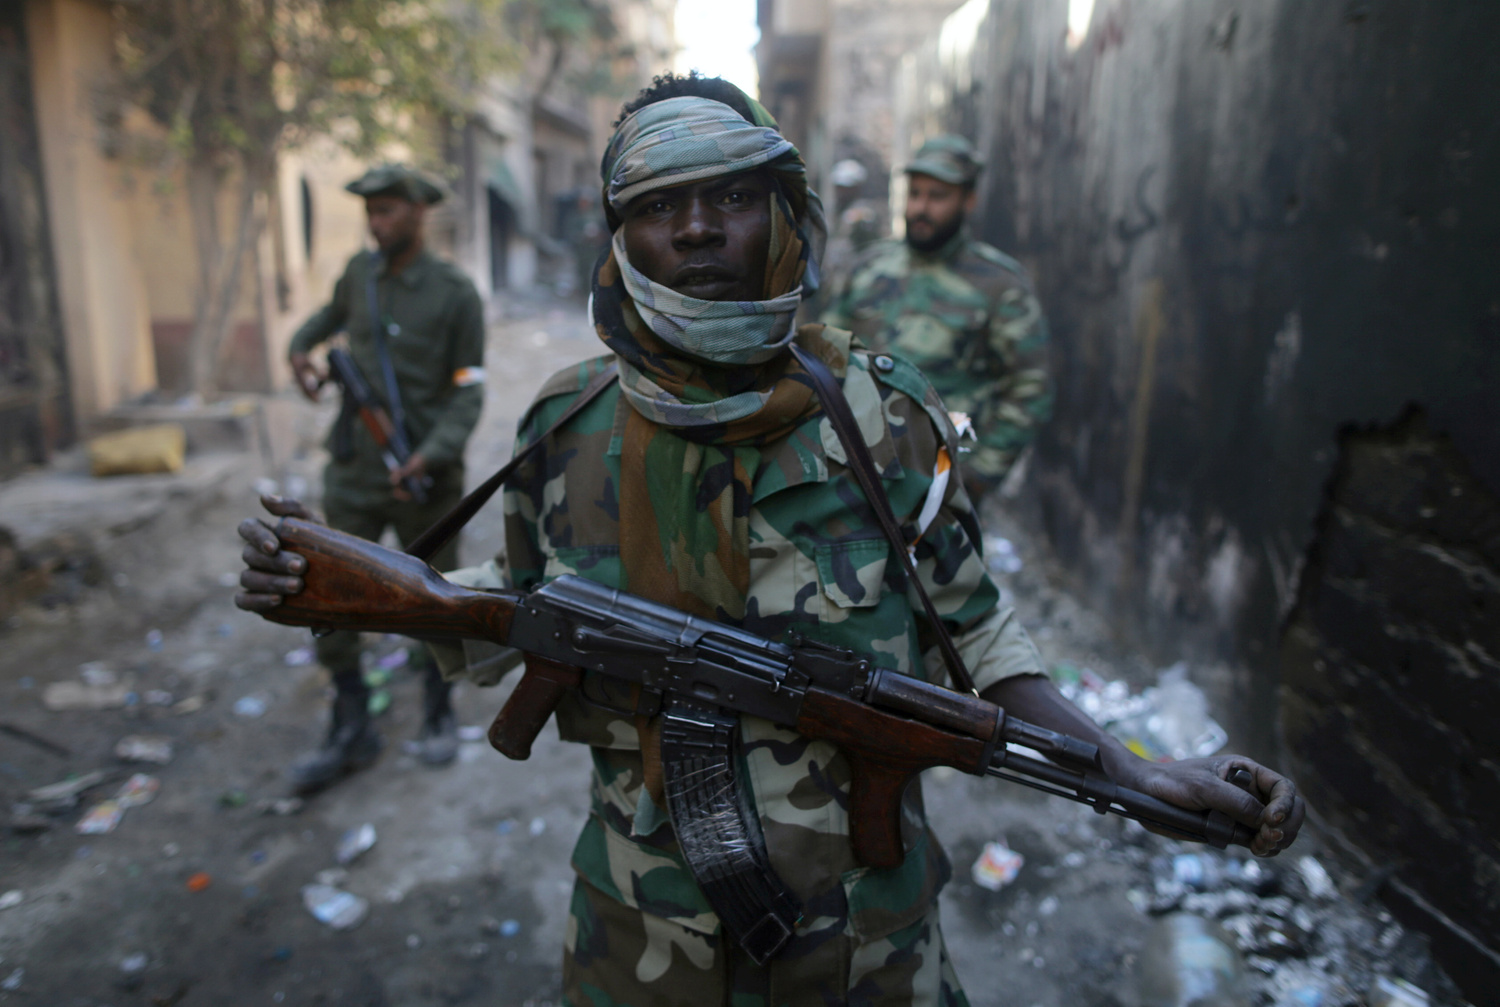 Un membro dell'esercito nazionale libico detiene la sua arma durante gli scontri con militanti islamisti nel distretto di Khreibish a Bengasi, Libia. REUTERS/Esam Omran Al-Fetori